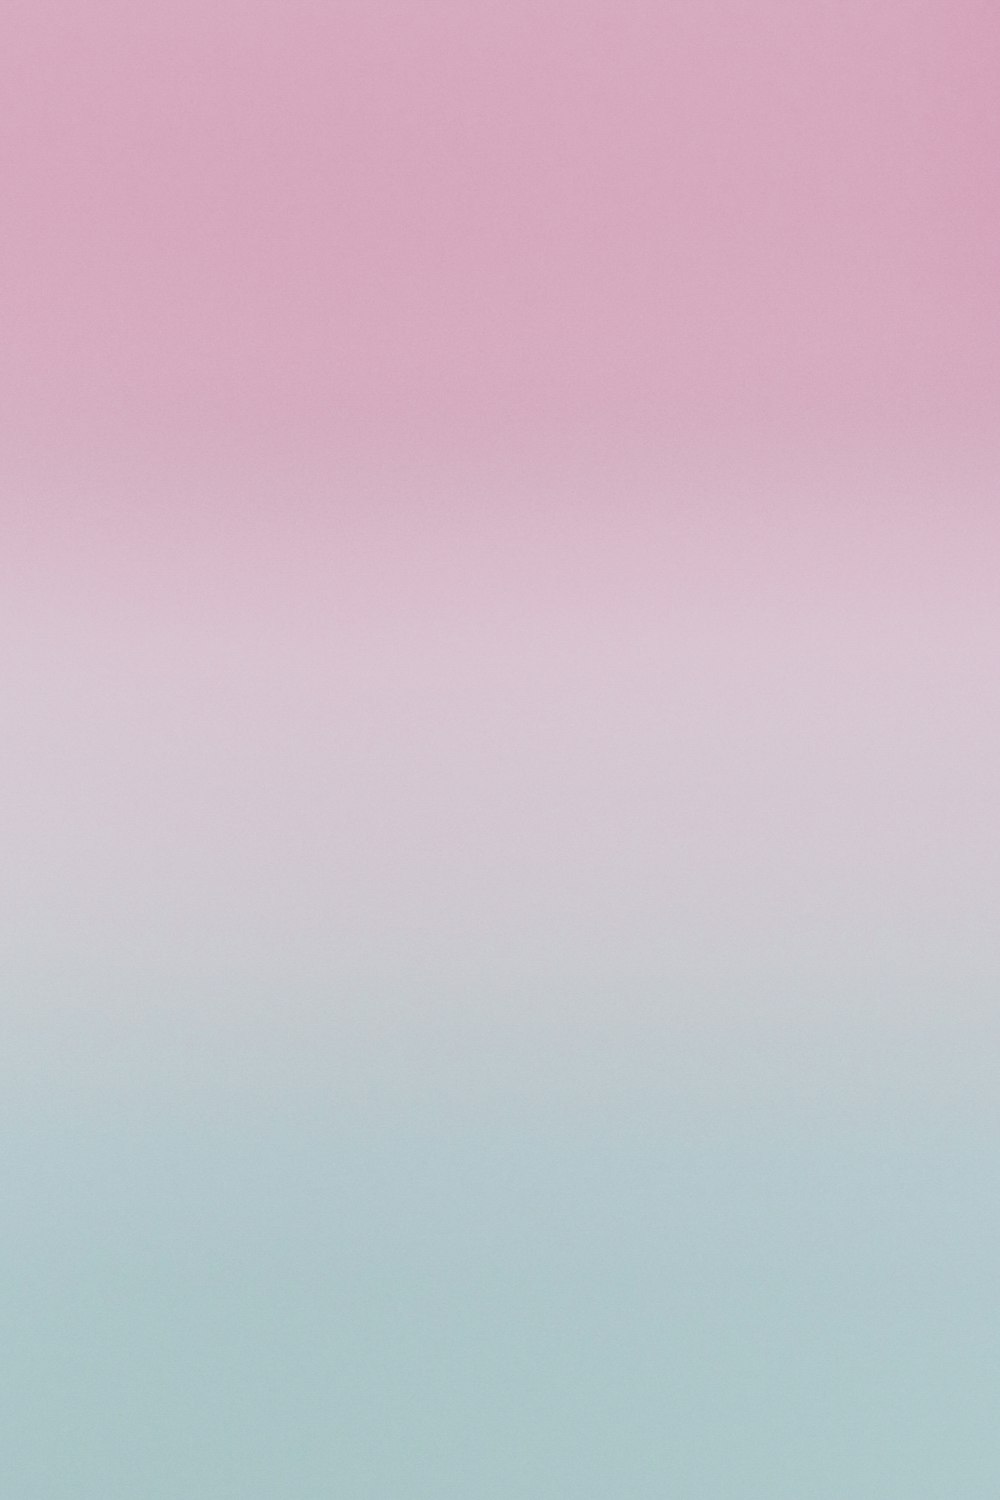 1K+ Colores Pastel Imágenes  Descargar imágenes gratis en Unsplash